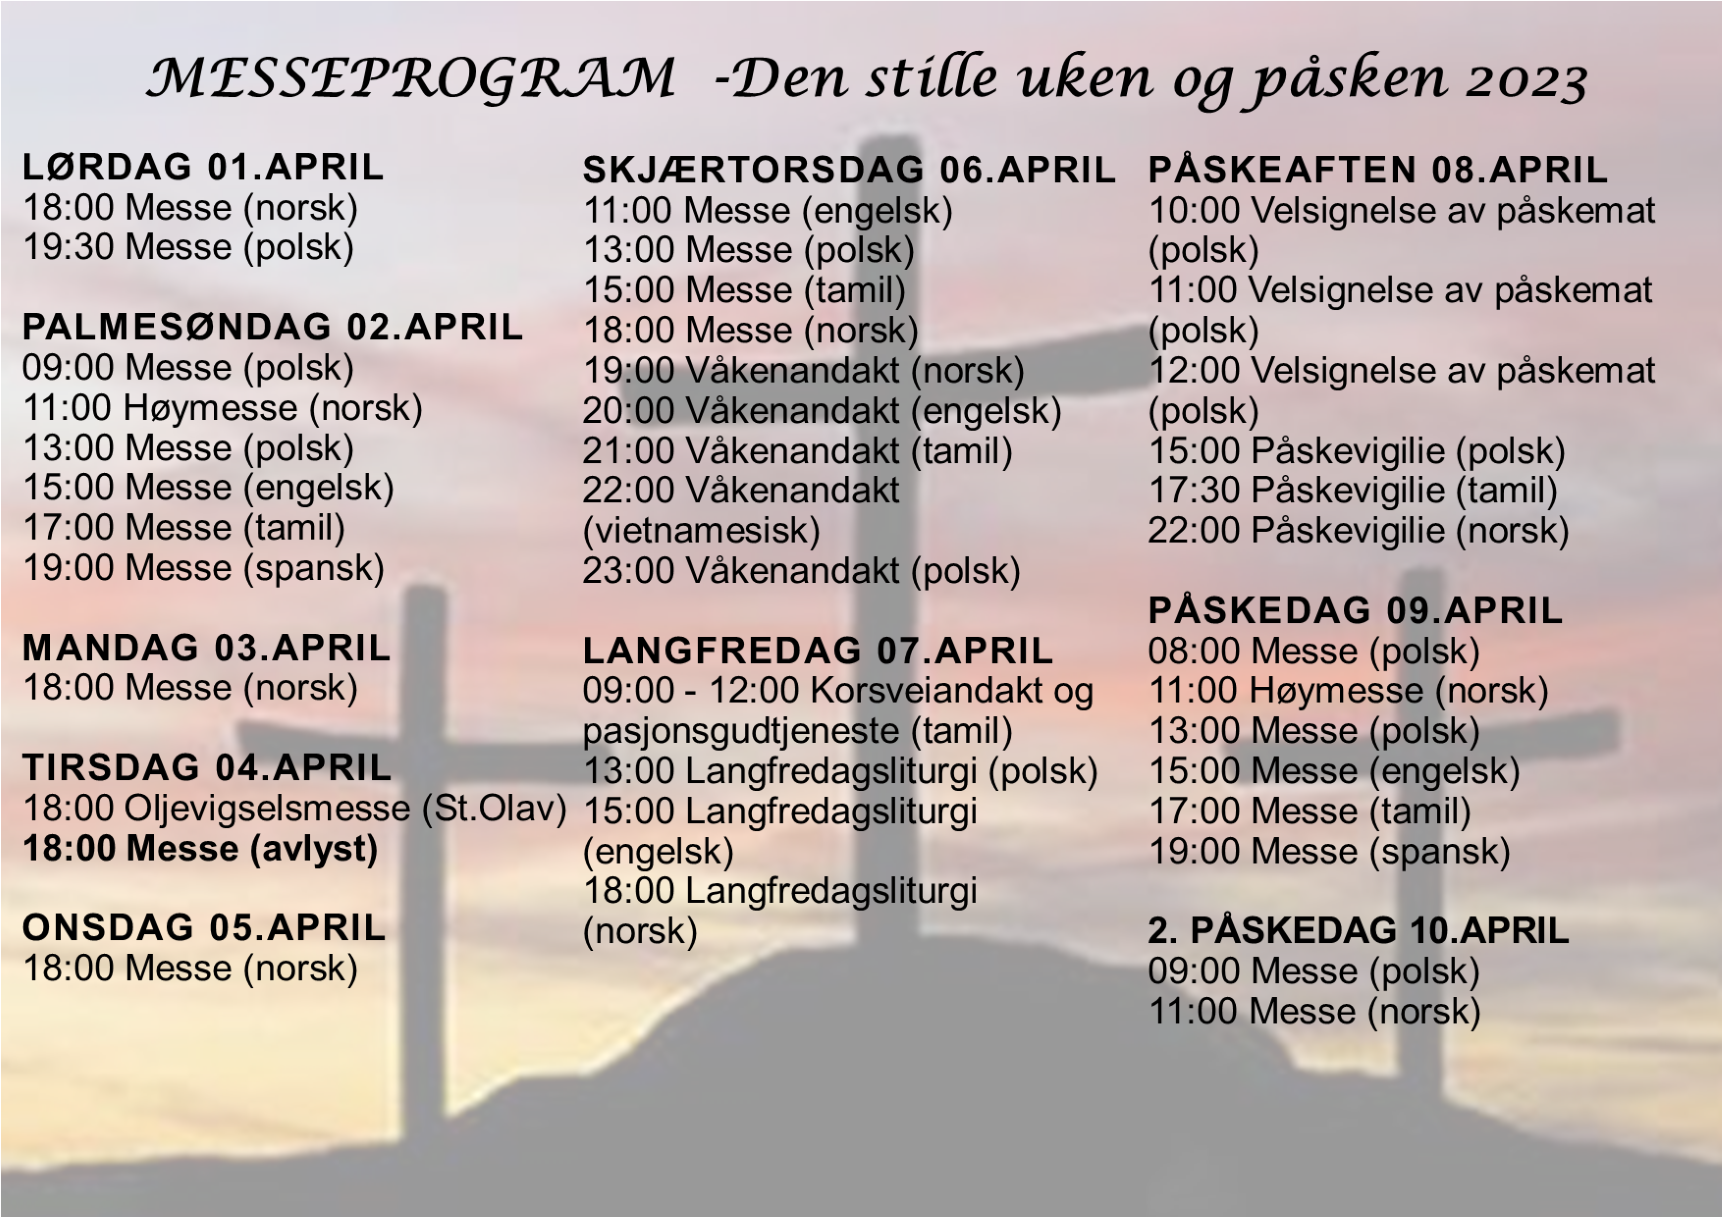 You are currently viewing MESSEPROGRAM FOR DEN STILLE UKE OG PÅSKE 2023